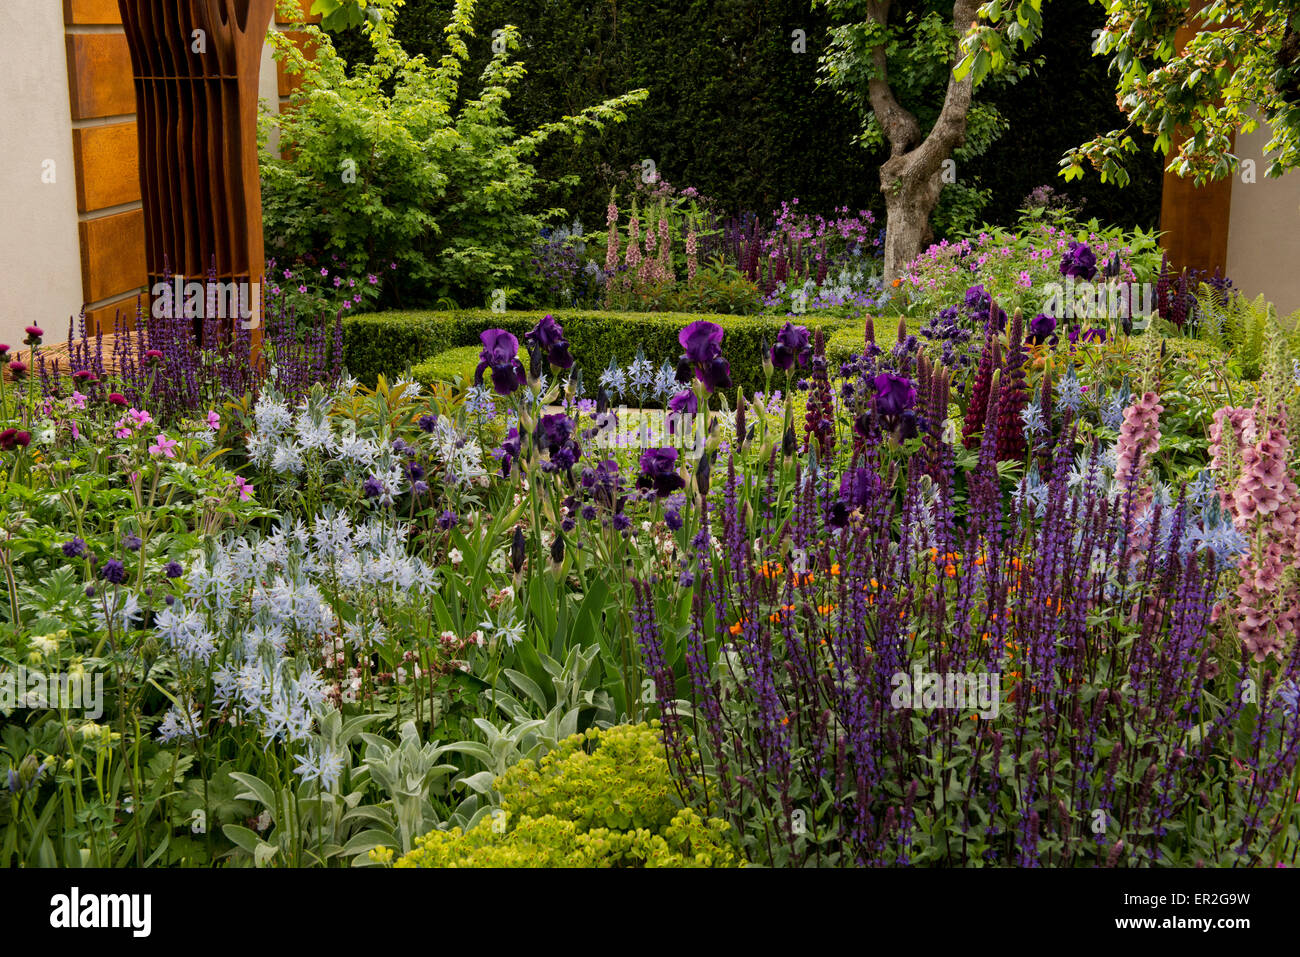 El Morgan Stanley Ciudades Sanas jardín diseñado por Chris Beardshaw en el Chelsea Flower Show 2015. Foto de stock